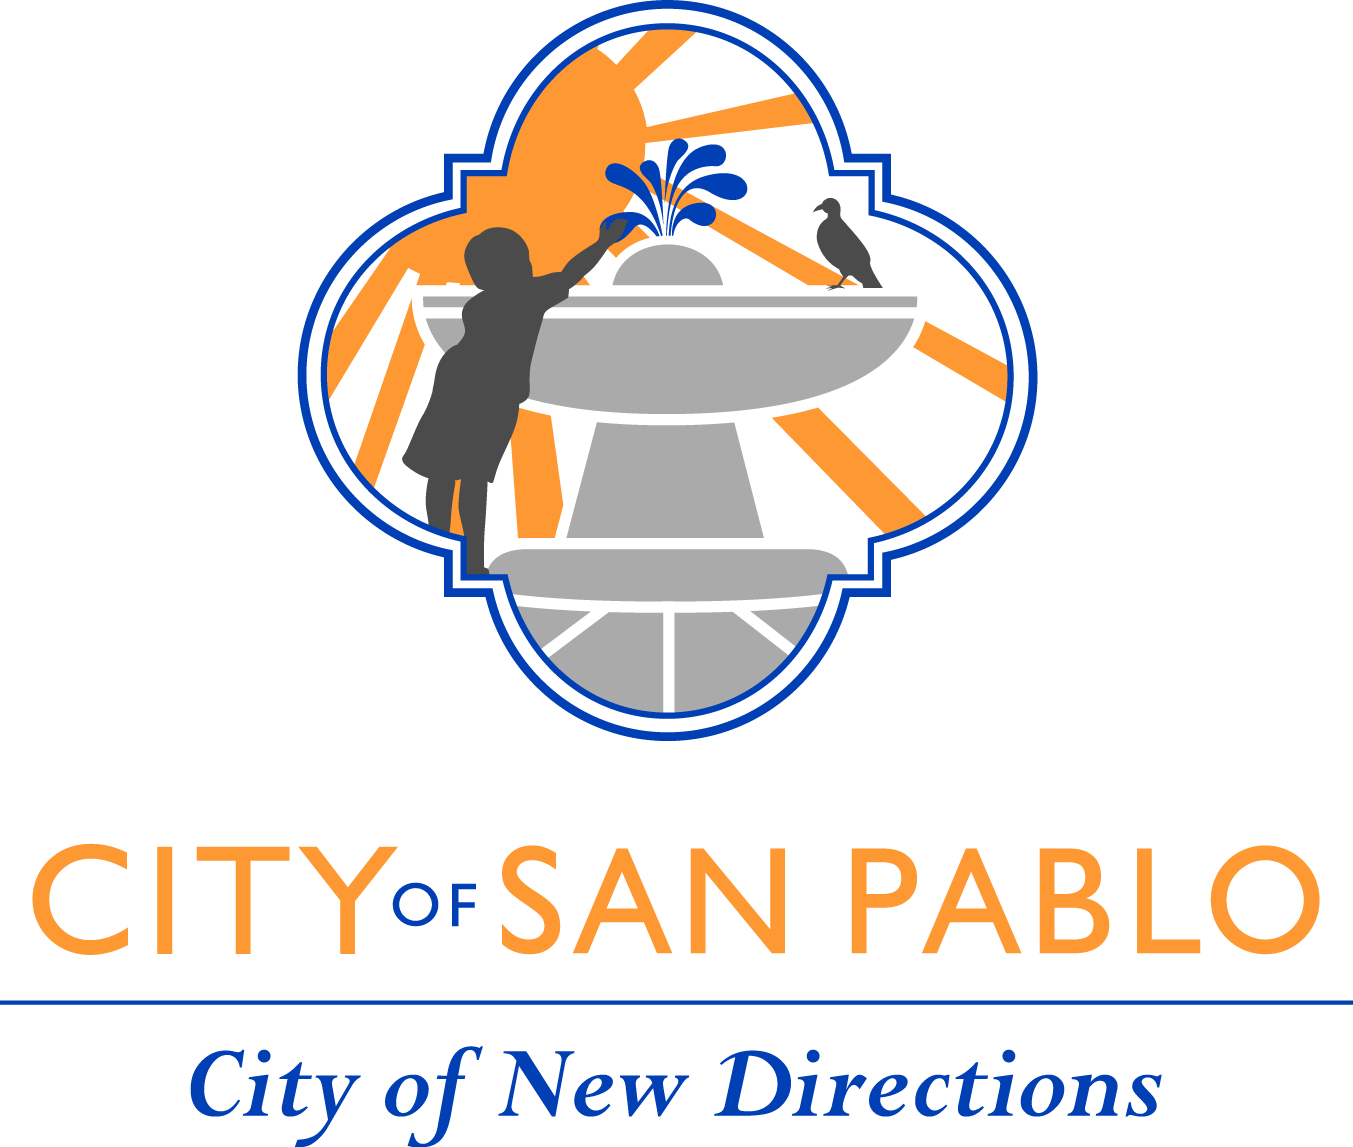 شعار مدينة سان بابلو ، يقول مدينة سان بابلو ، مدينة الاتجاه الجديد ، يظهر رسمًا توضيحيًا لطفل ، طائر ، شمس ، نافورة ماء